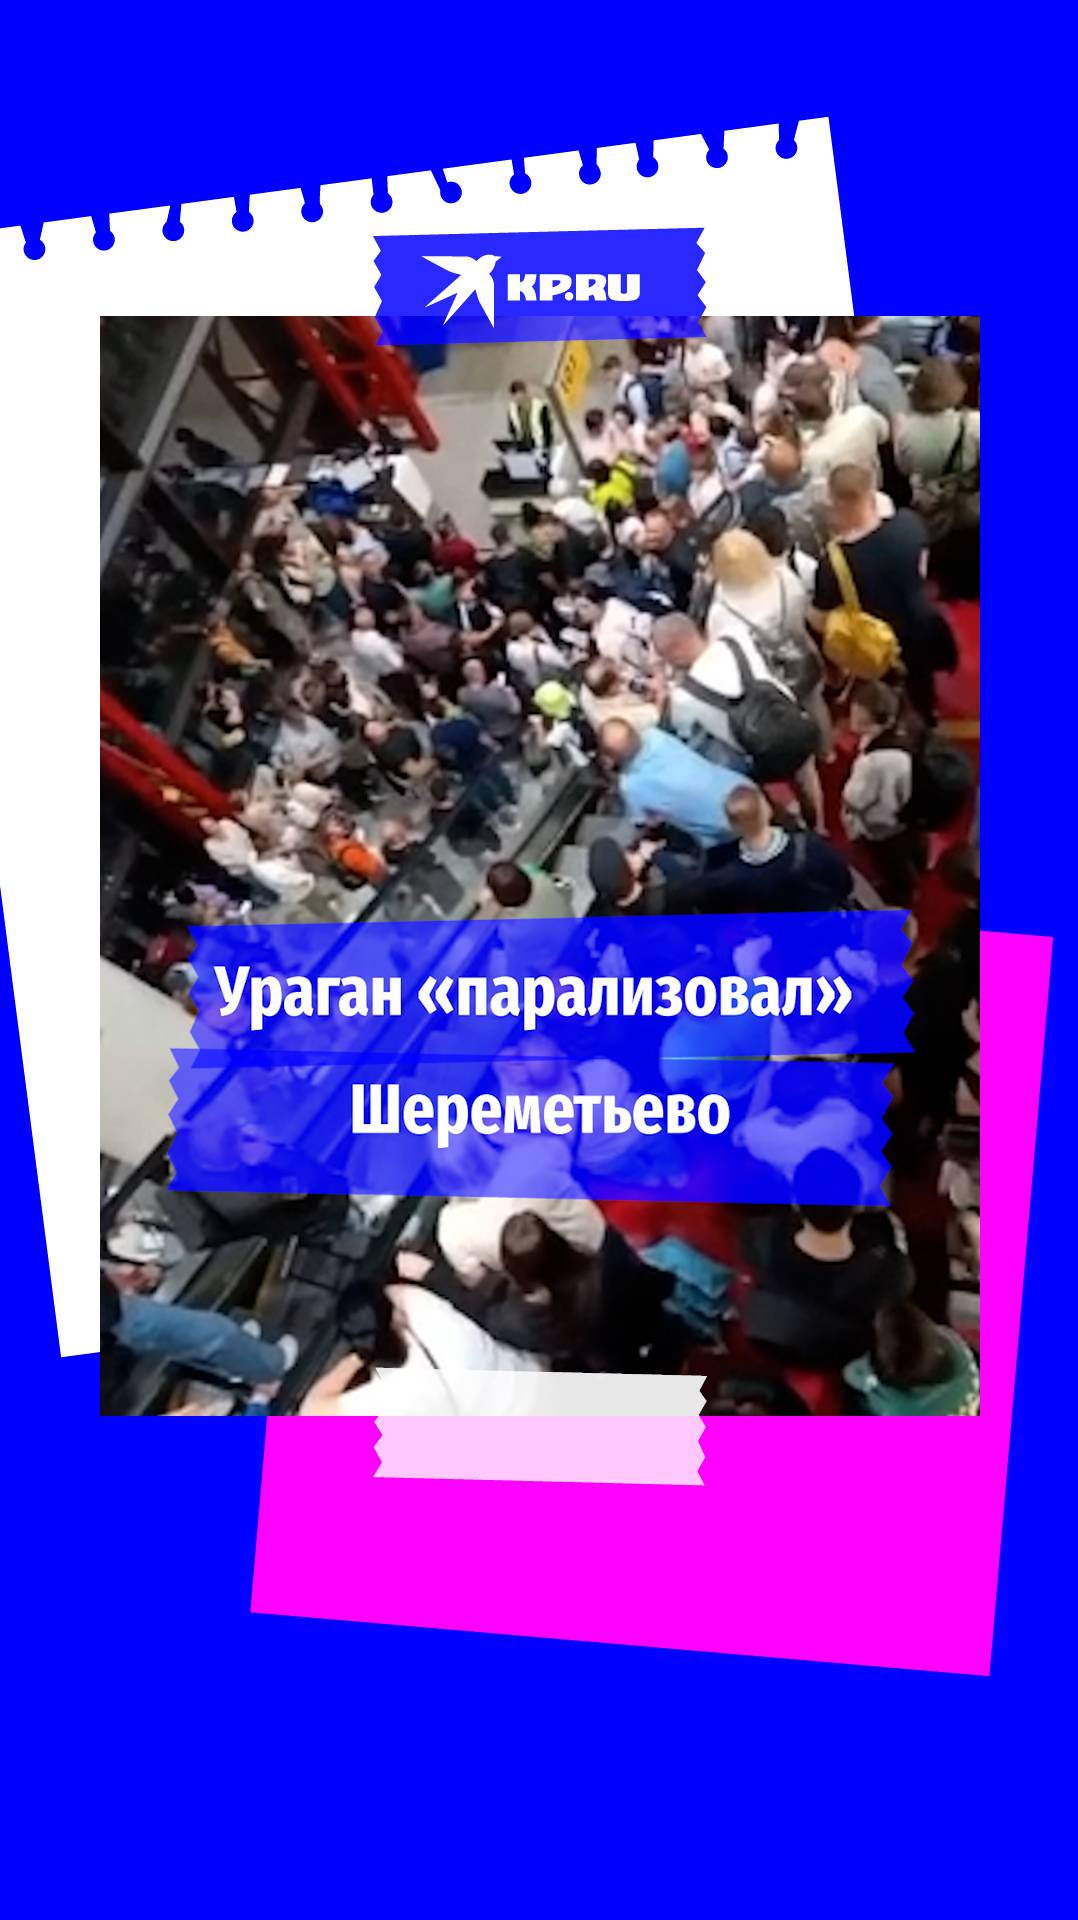 Пассажиры не могут улететь из Шереметьево из-за урагана «Орхан»